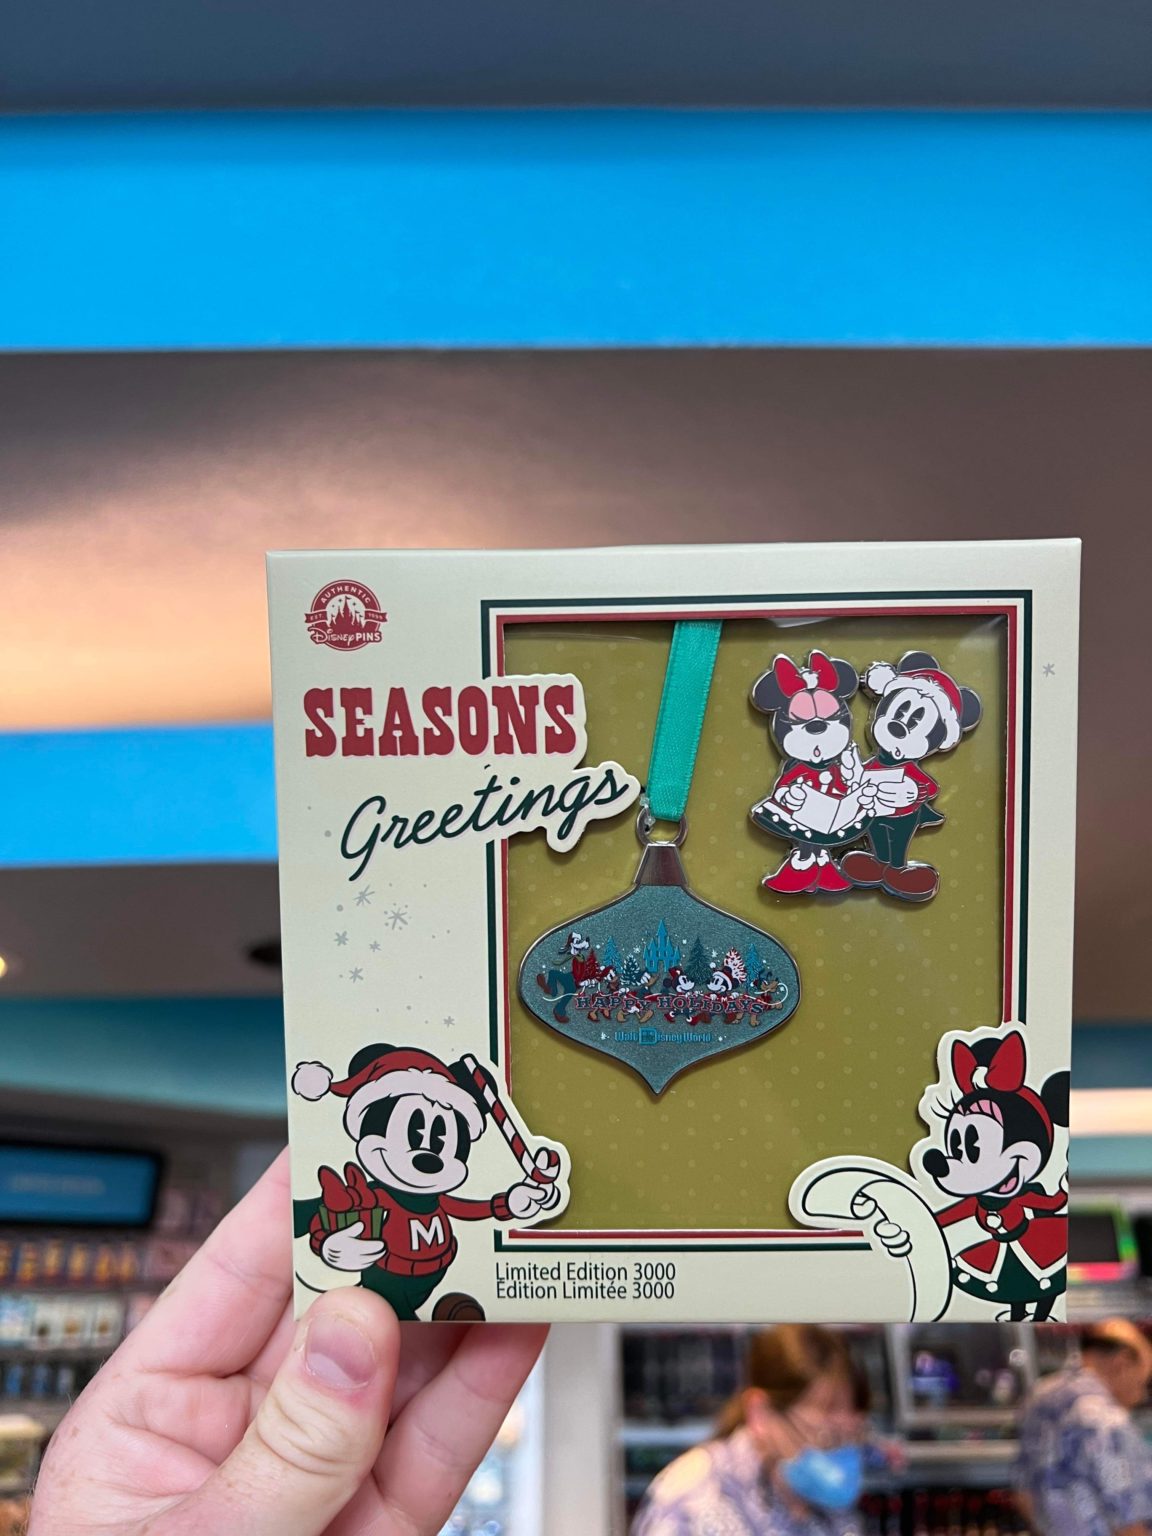 Say Seasons Greetings With New Disney Holiday Pins!